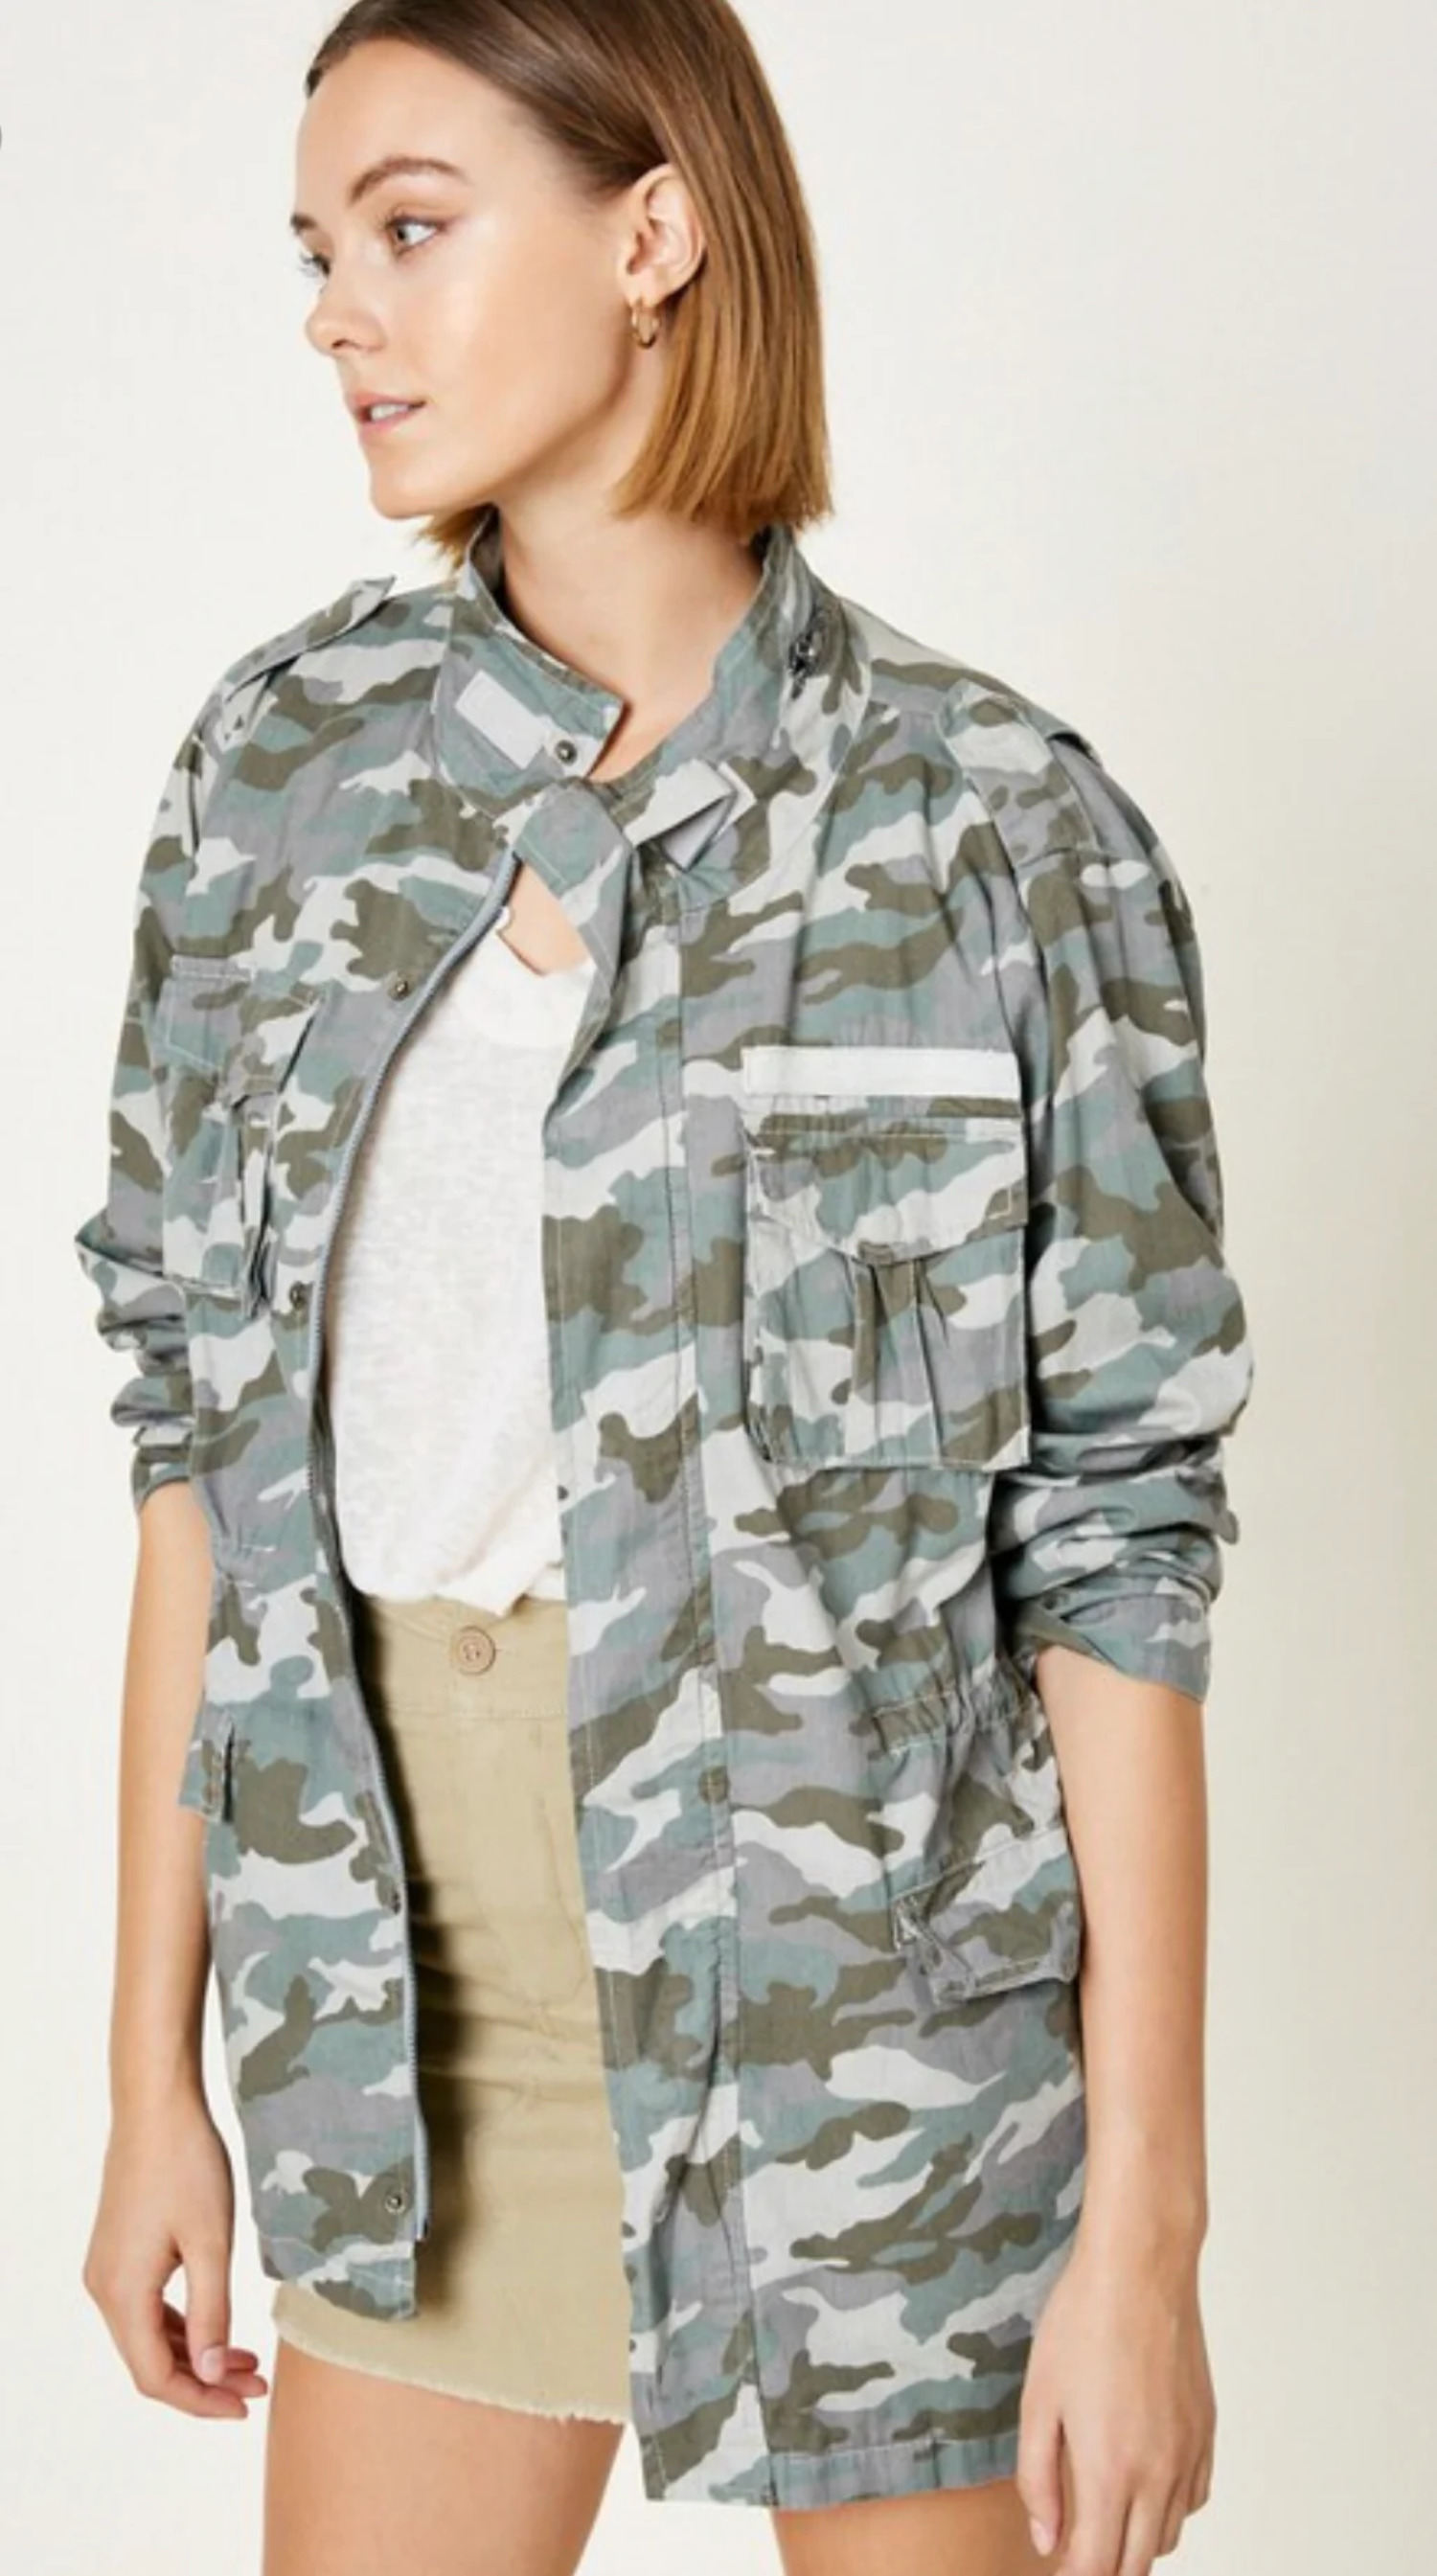 Women's Camouflage Jacket - image 3 of 5